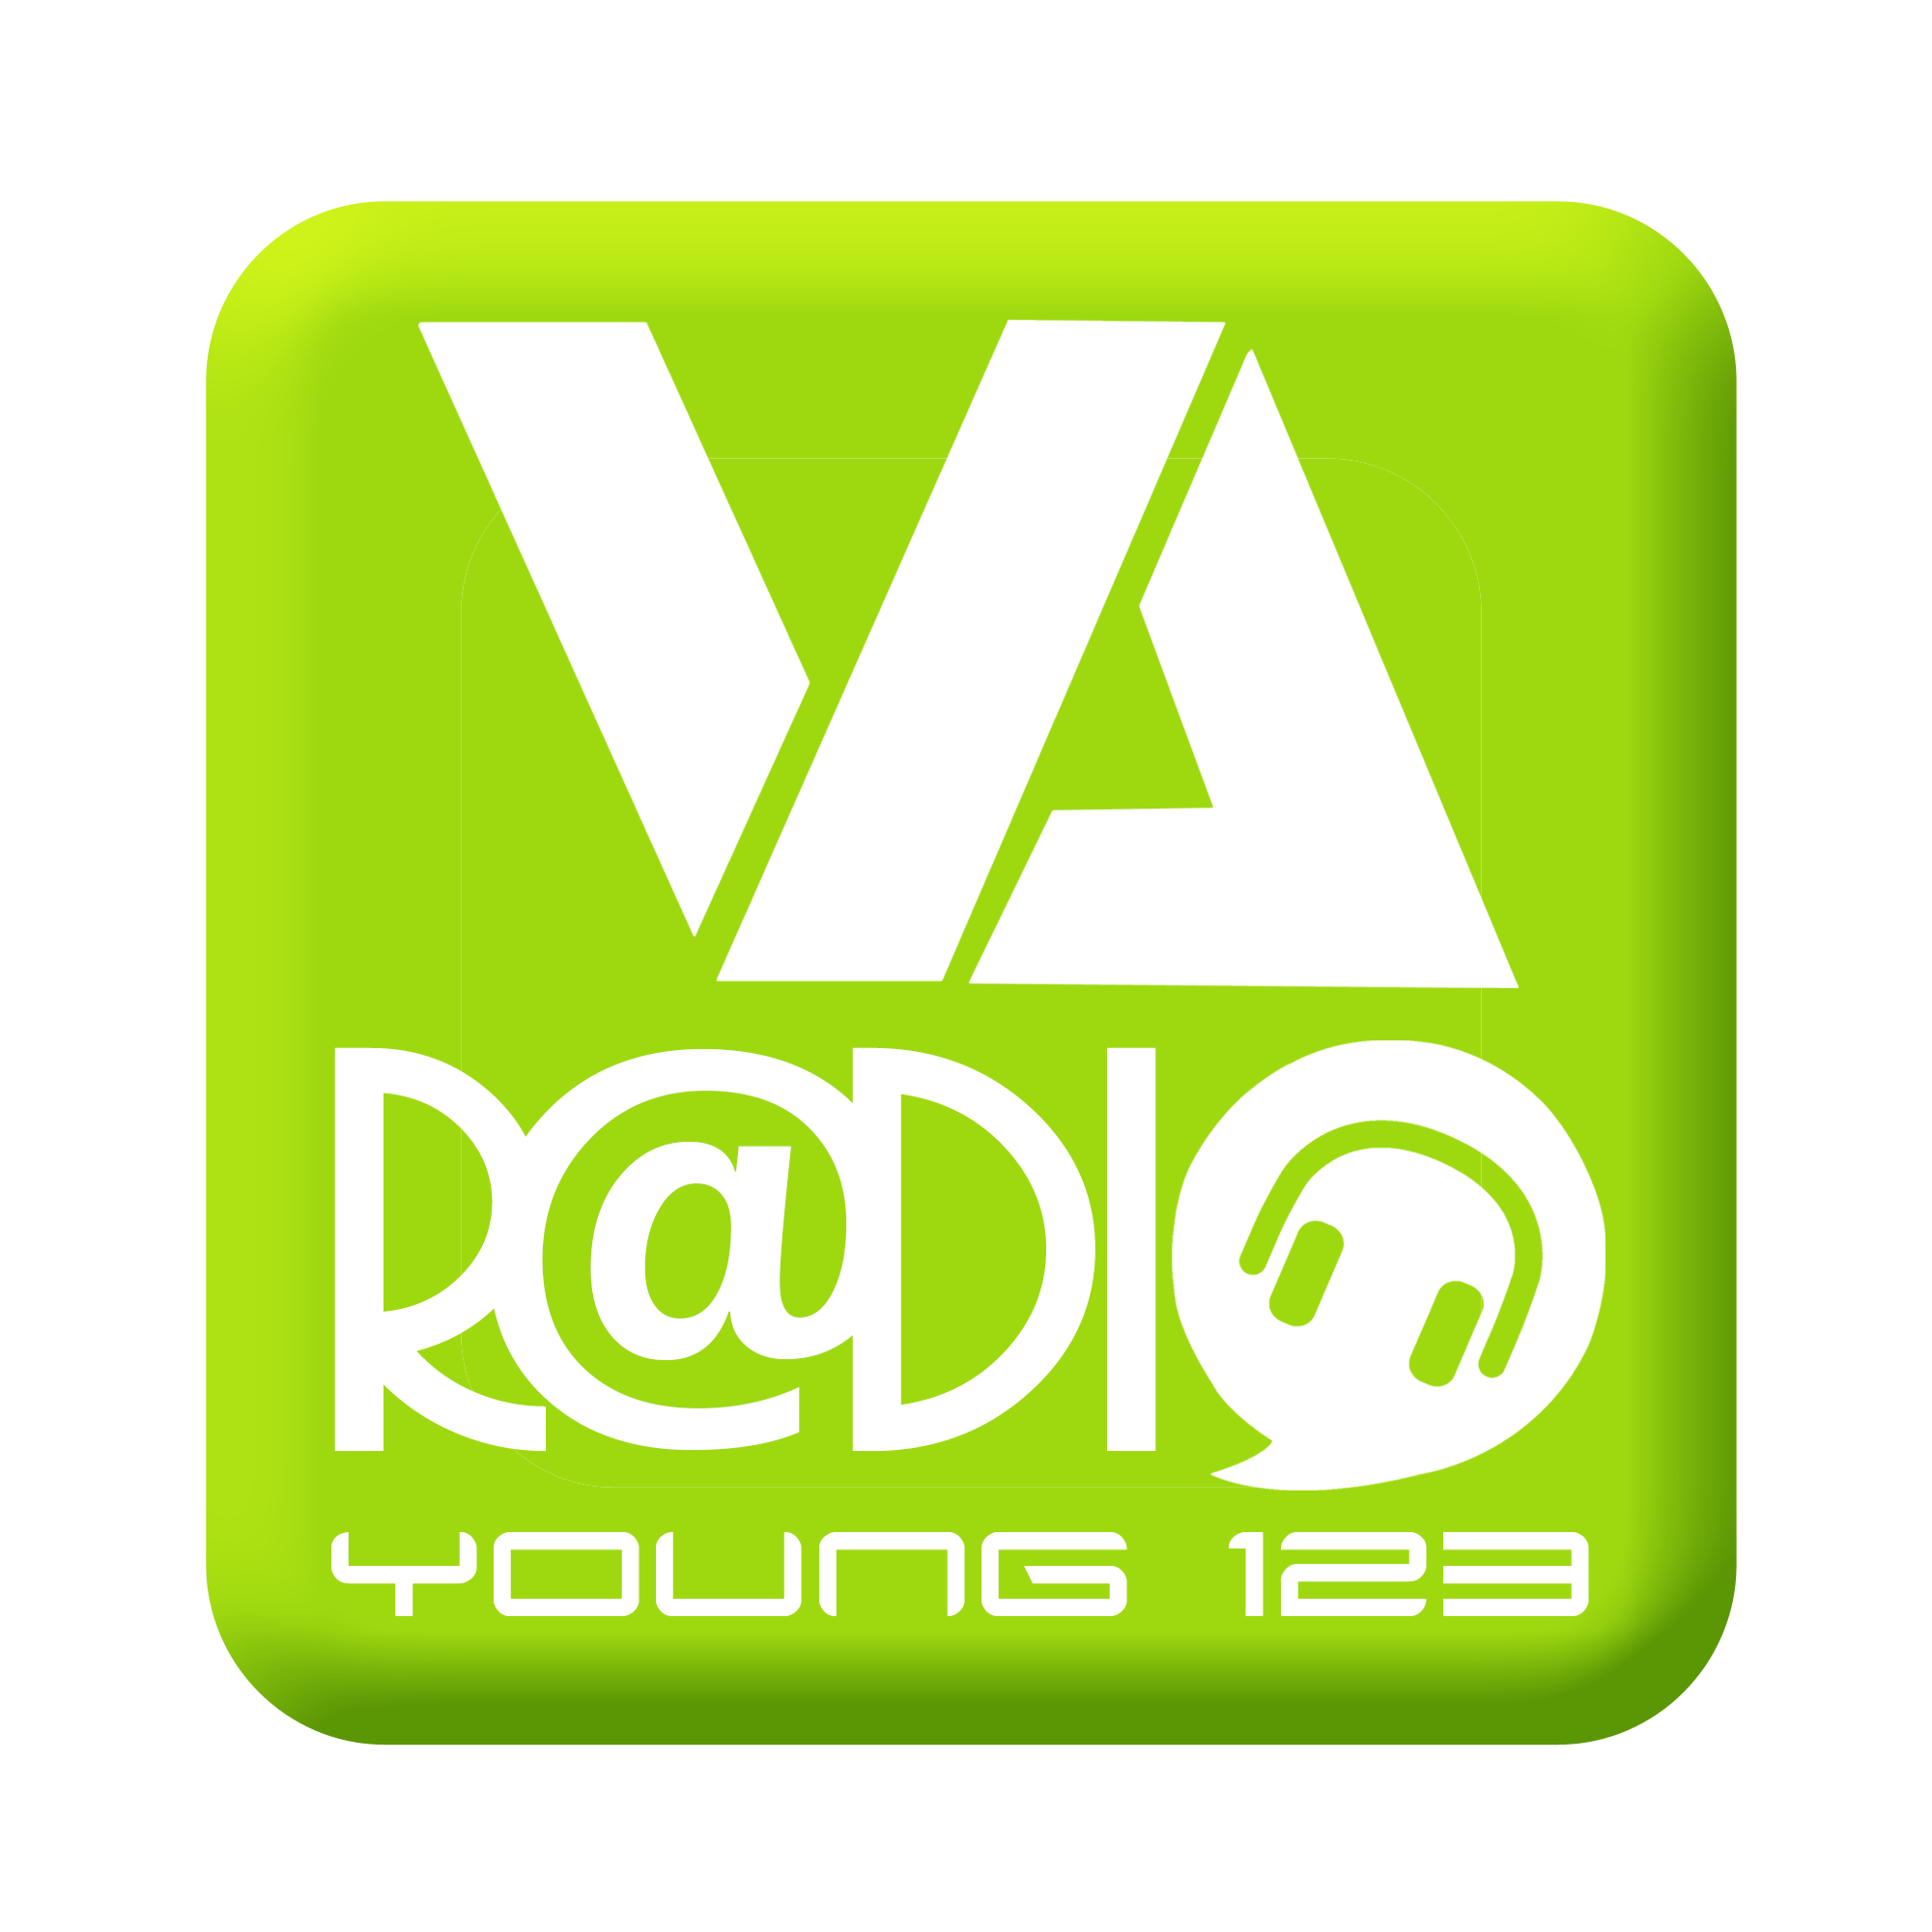 VA radio